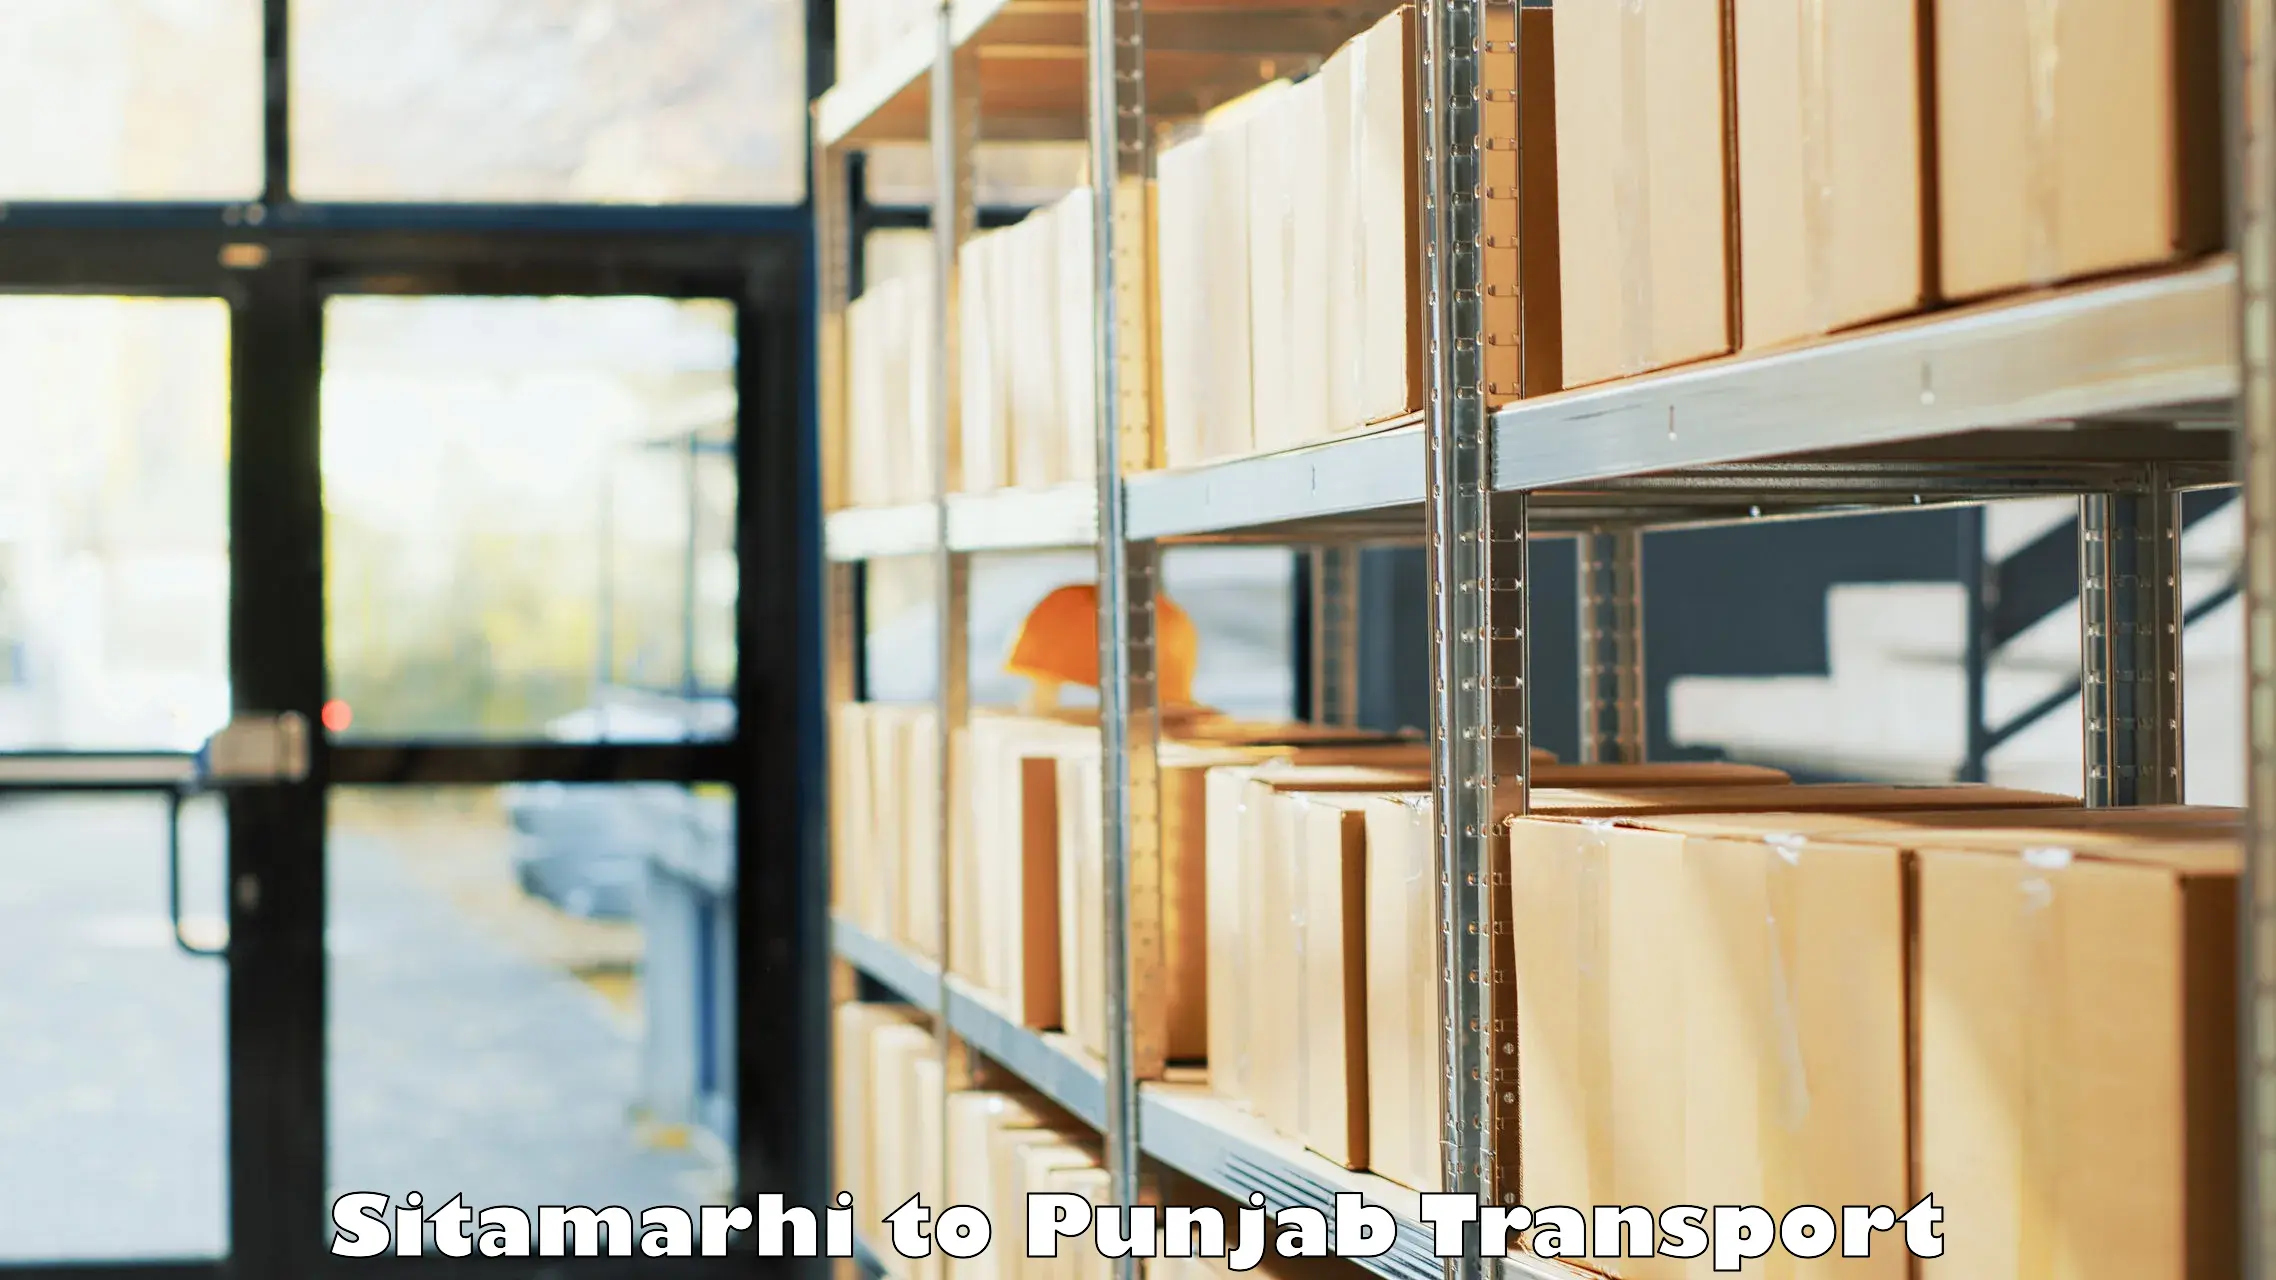 Furniture transport service Sitamarhi to NIT Jallandhar